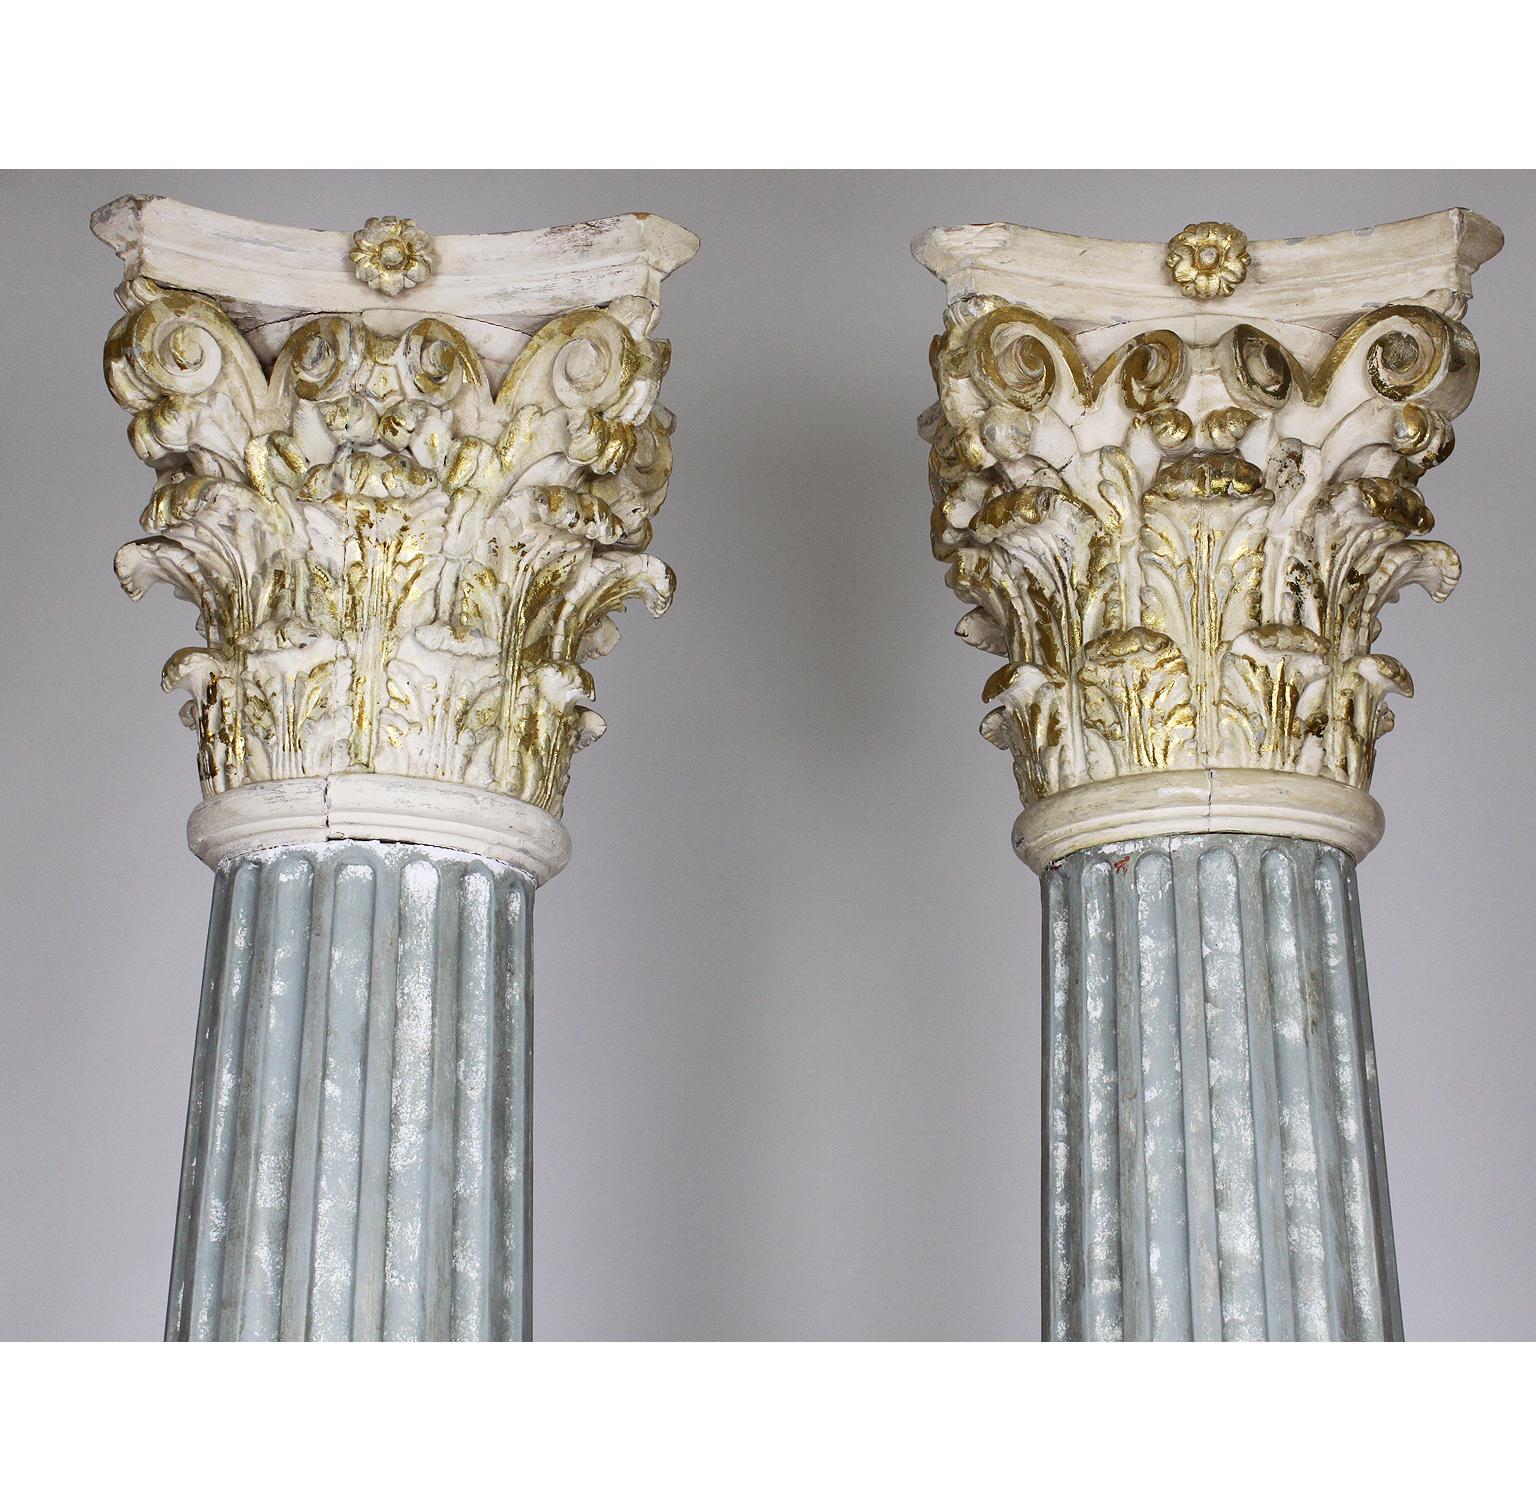 Une grande paire de colonnes corinthiennes architecturales de style gréco-romain en bois sculpté et gesso sculpté en faux-marbre et doré à la feuille. La colonne élancée en noyer sculpté repose sur une plinthe carrée et est couronnée d'un chapiteau